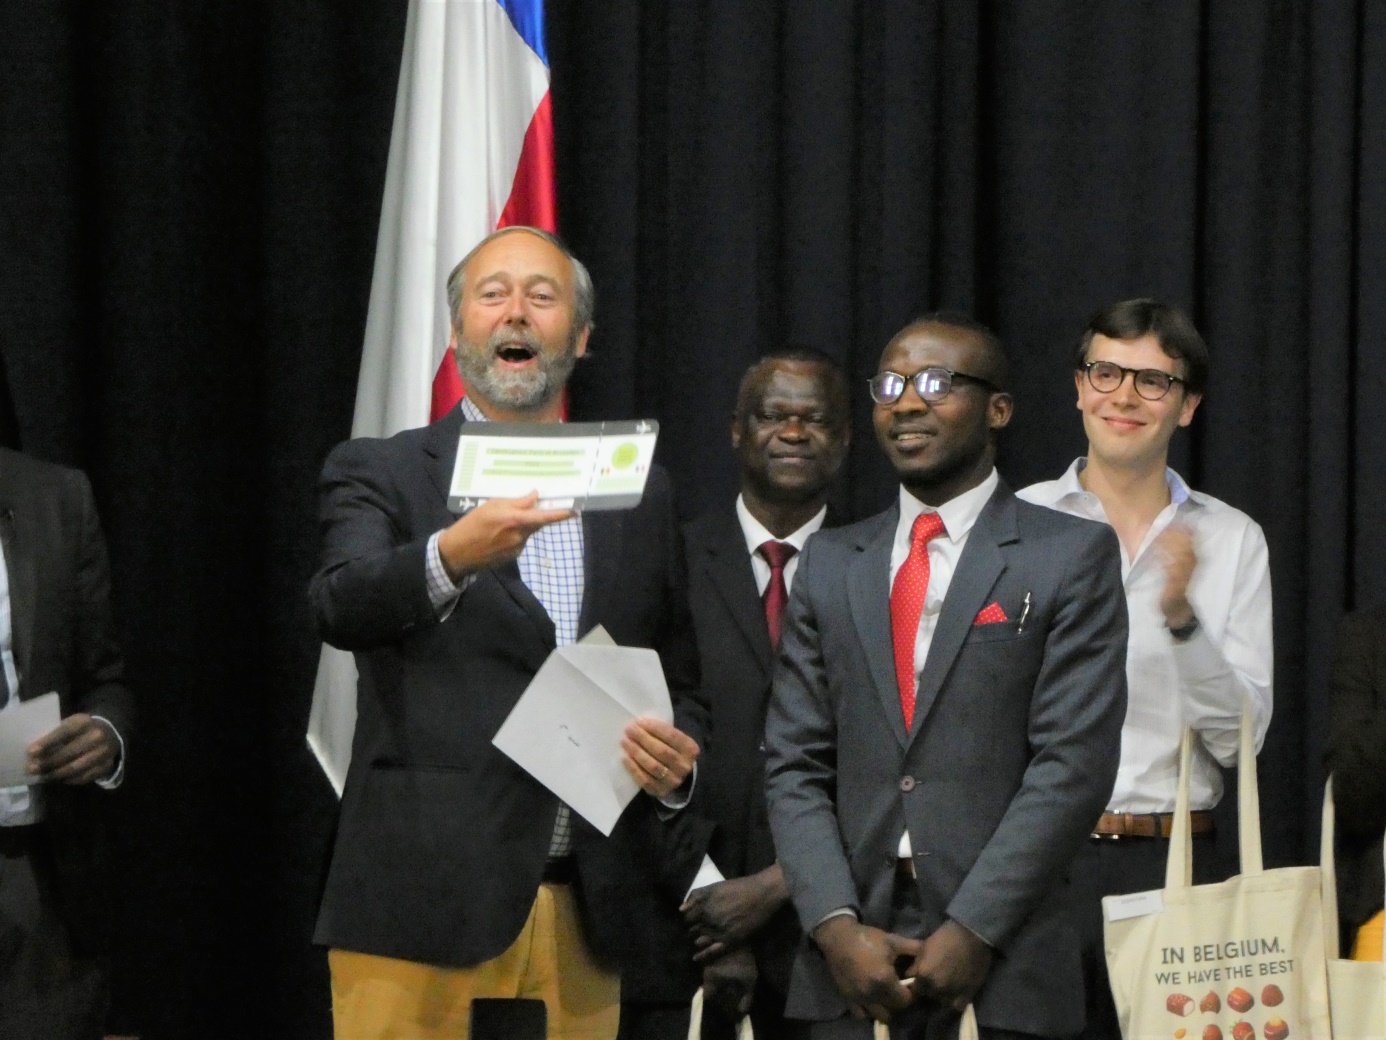 M. l'Ambassadeur de Belgique au Chili, Christian de Lannoy, remet le 1er prix (un billet d'avion vers la France) au gagnant, Angelo Gaspard (c) DGWB Chili et Institut Français du Chili